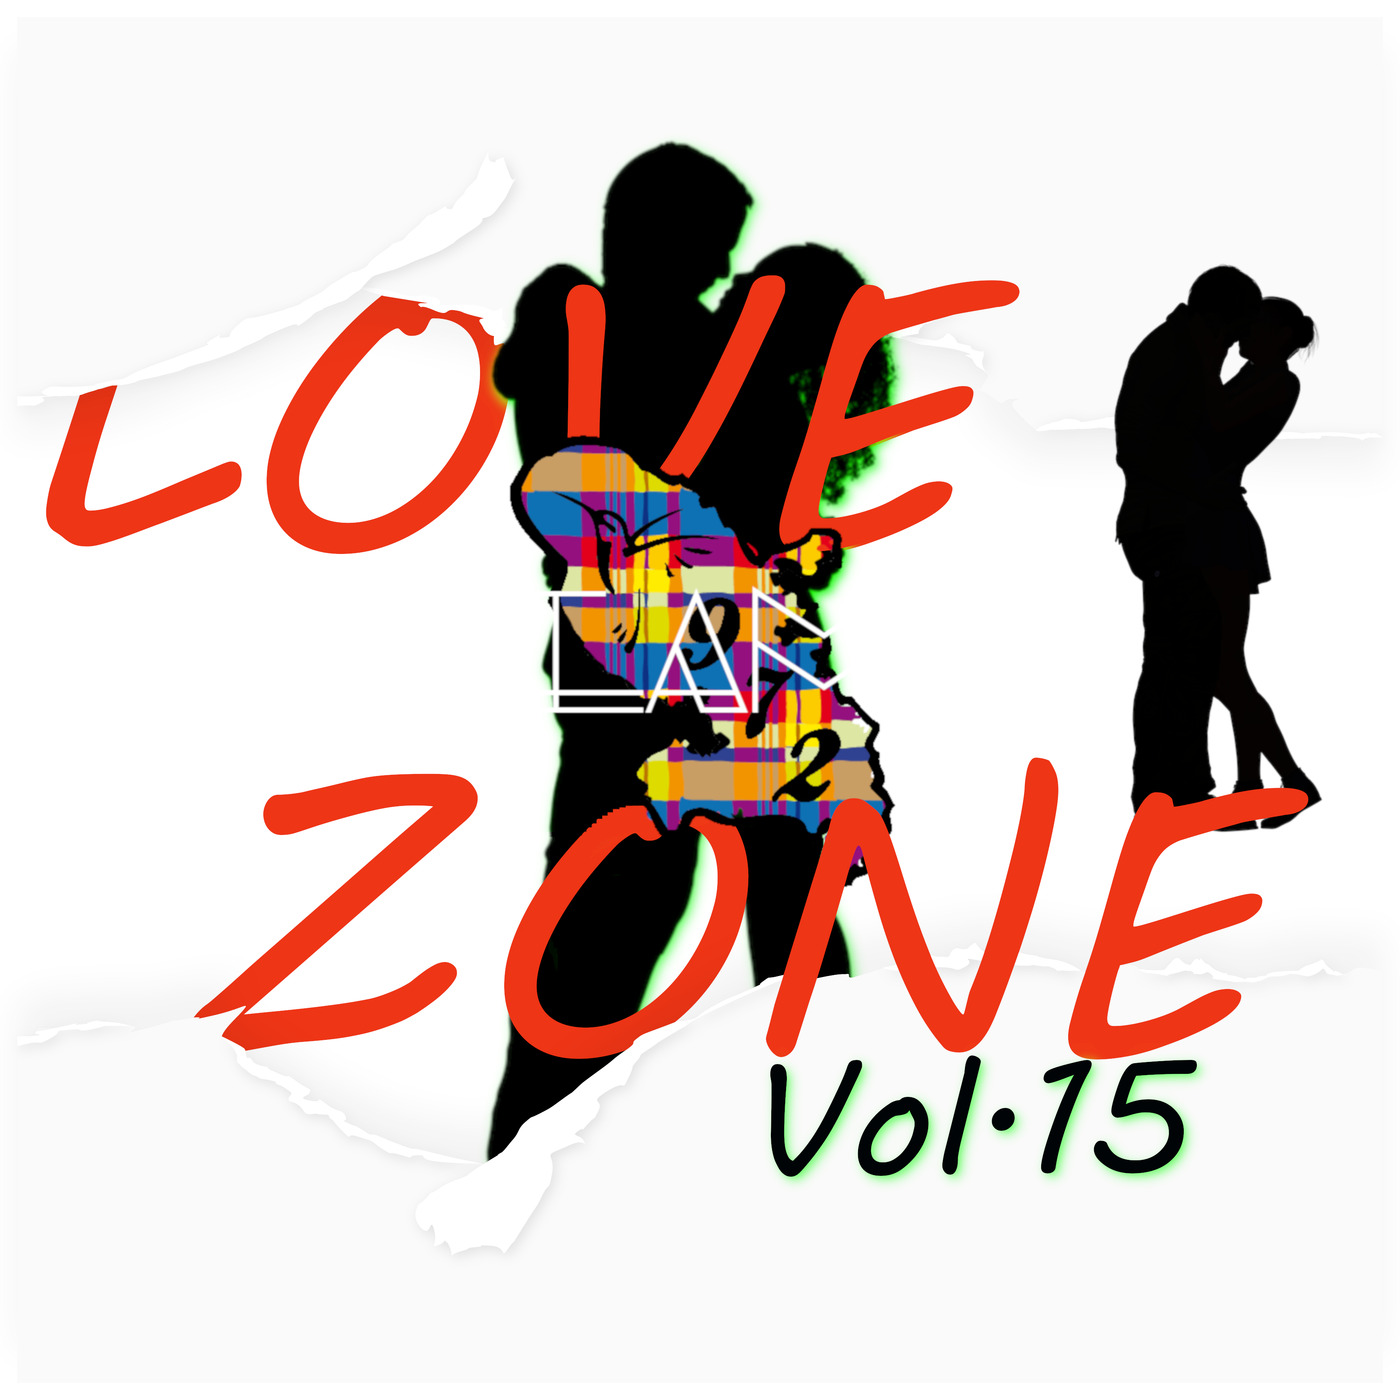 Love Zone Vol 15